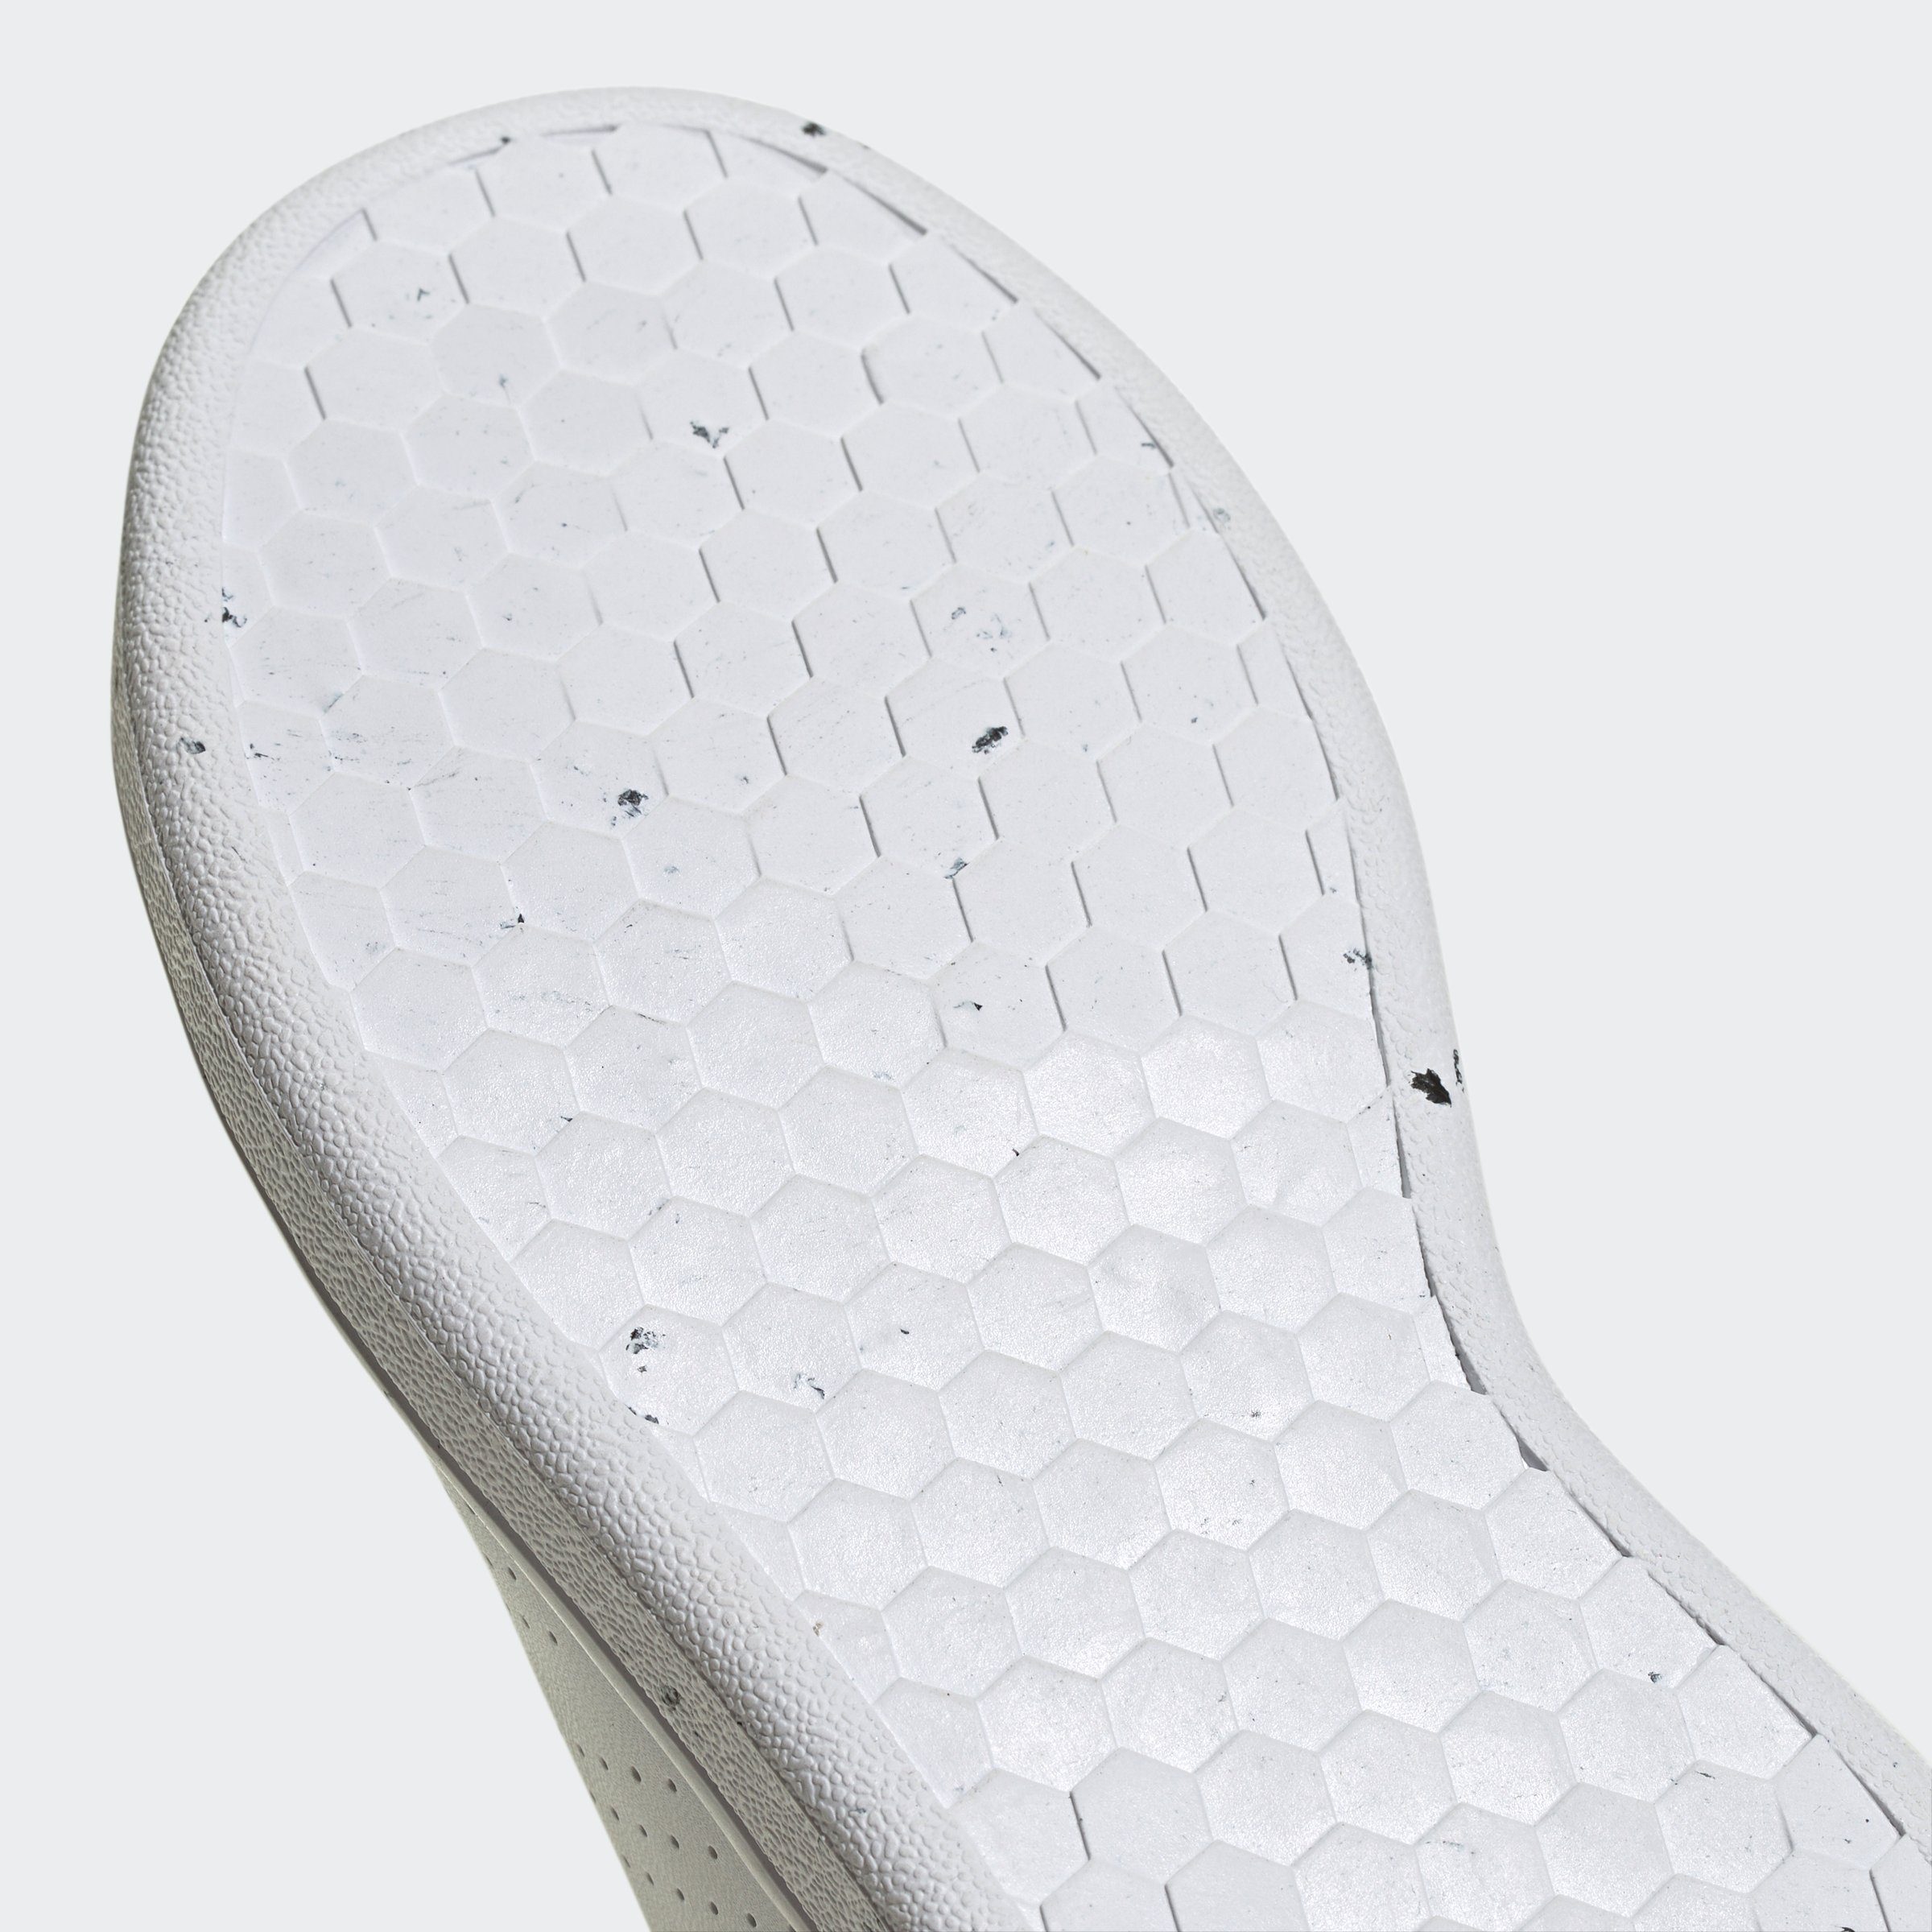 LIFESTYLE / des White / den Blue Cloud Spuren adidas COURT Design White Stan Cloud Sportswear Smith ADVANTAGE LACE Fusion auf Sneaker adidas